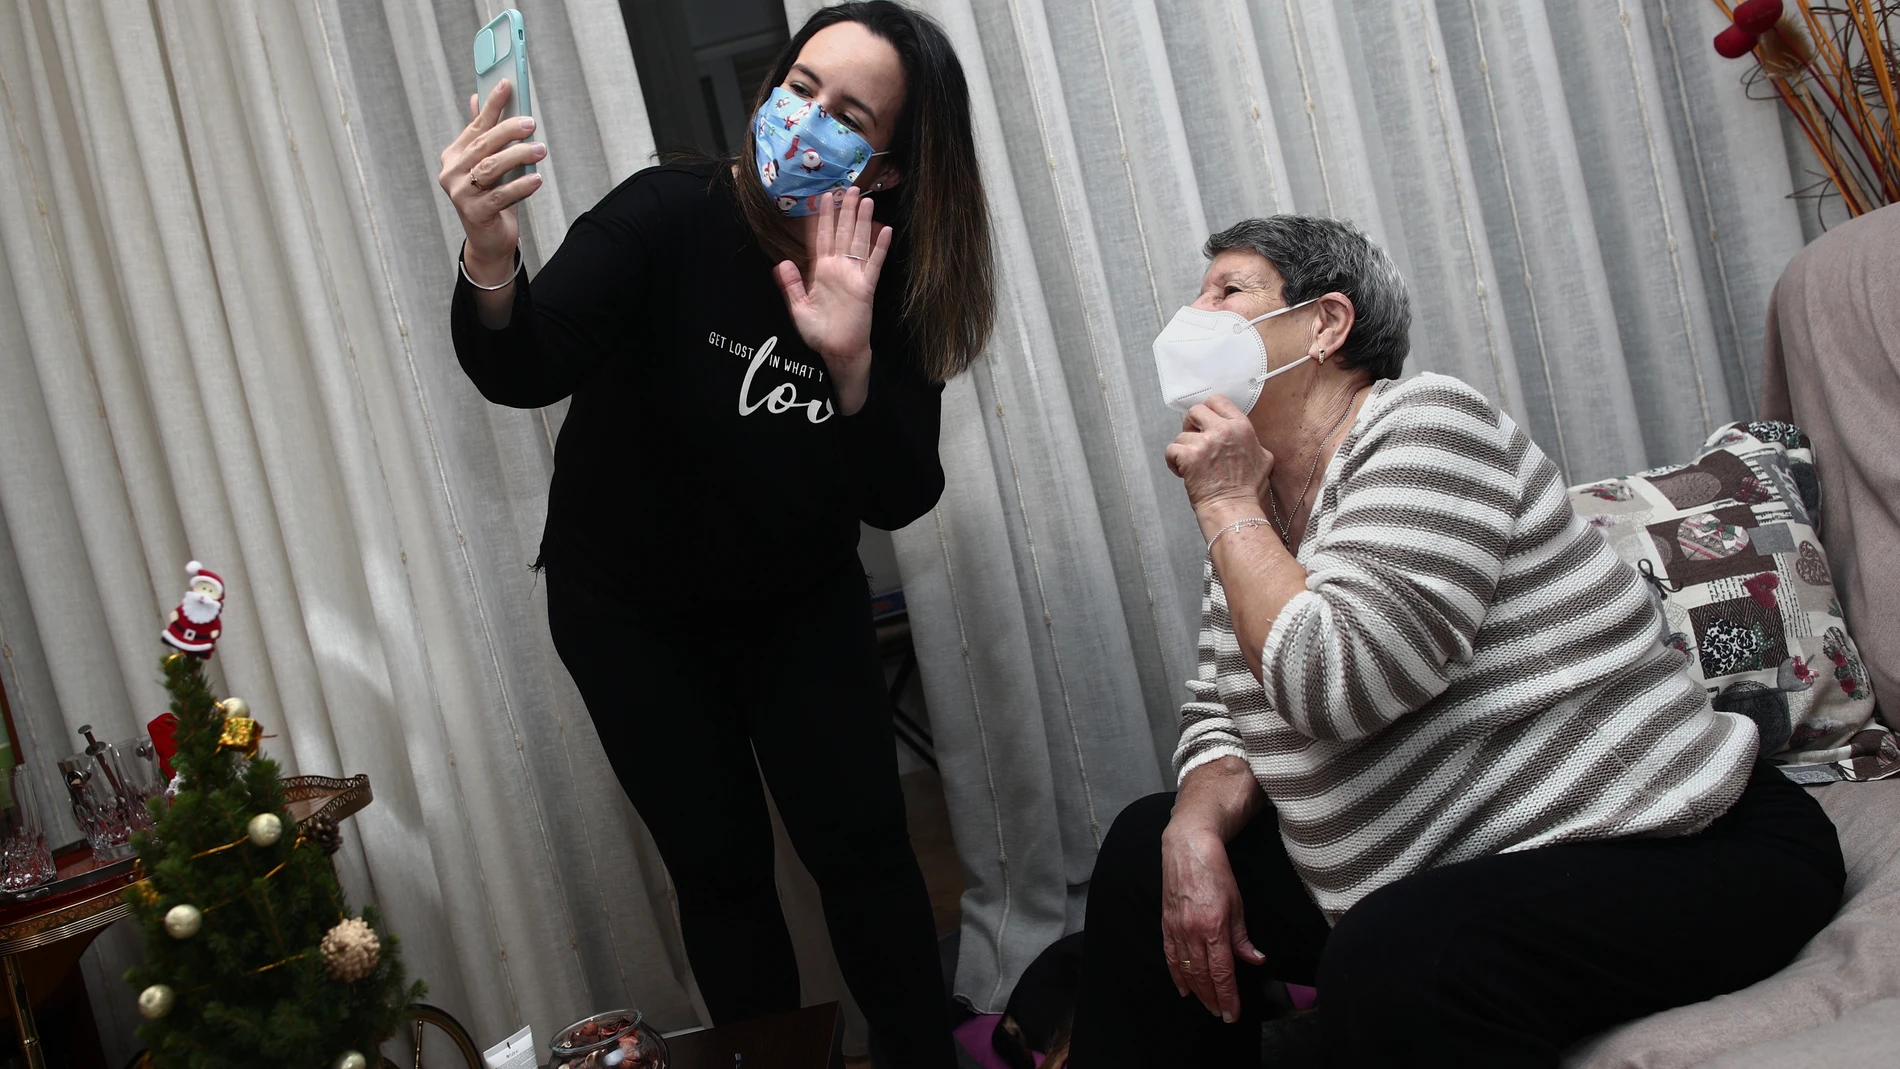 Una mujer viuda y de riesgo, Carmina y su hija Patricia hablan por videoconferencia con la hermana de Carmina en la cena de Nochebuena durante la pandemia en Móstoles